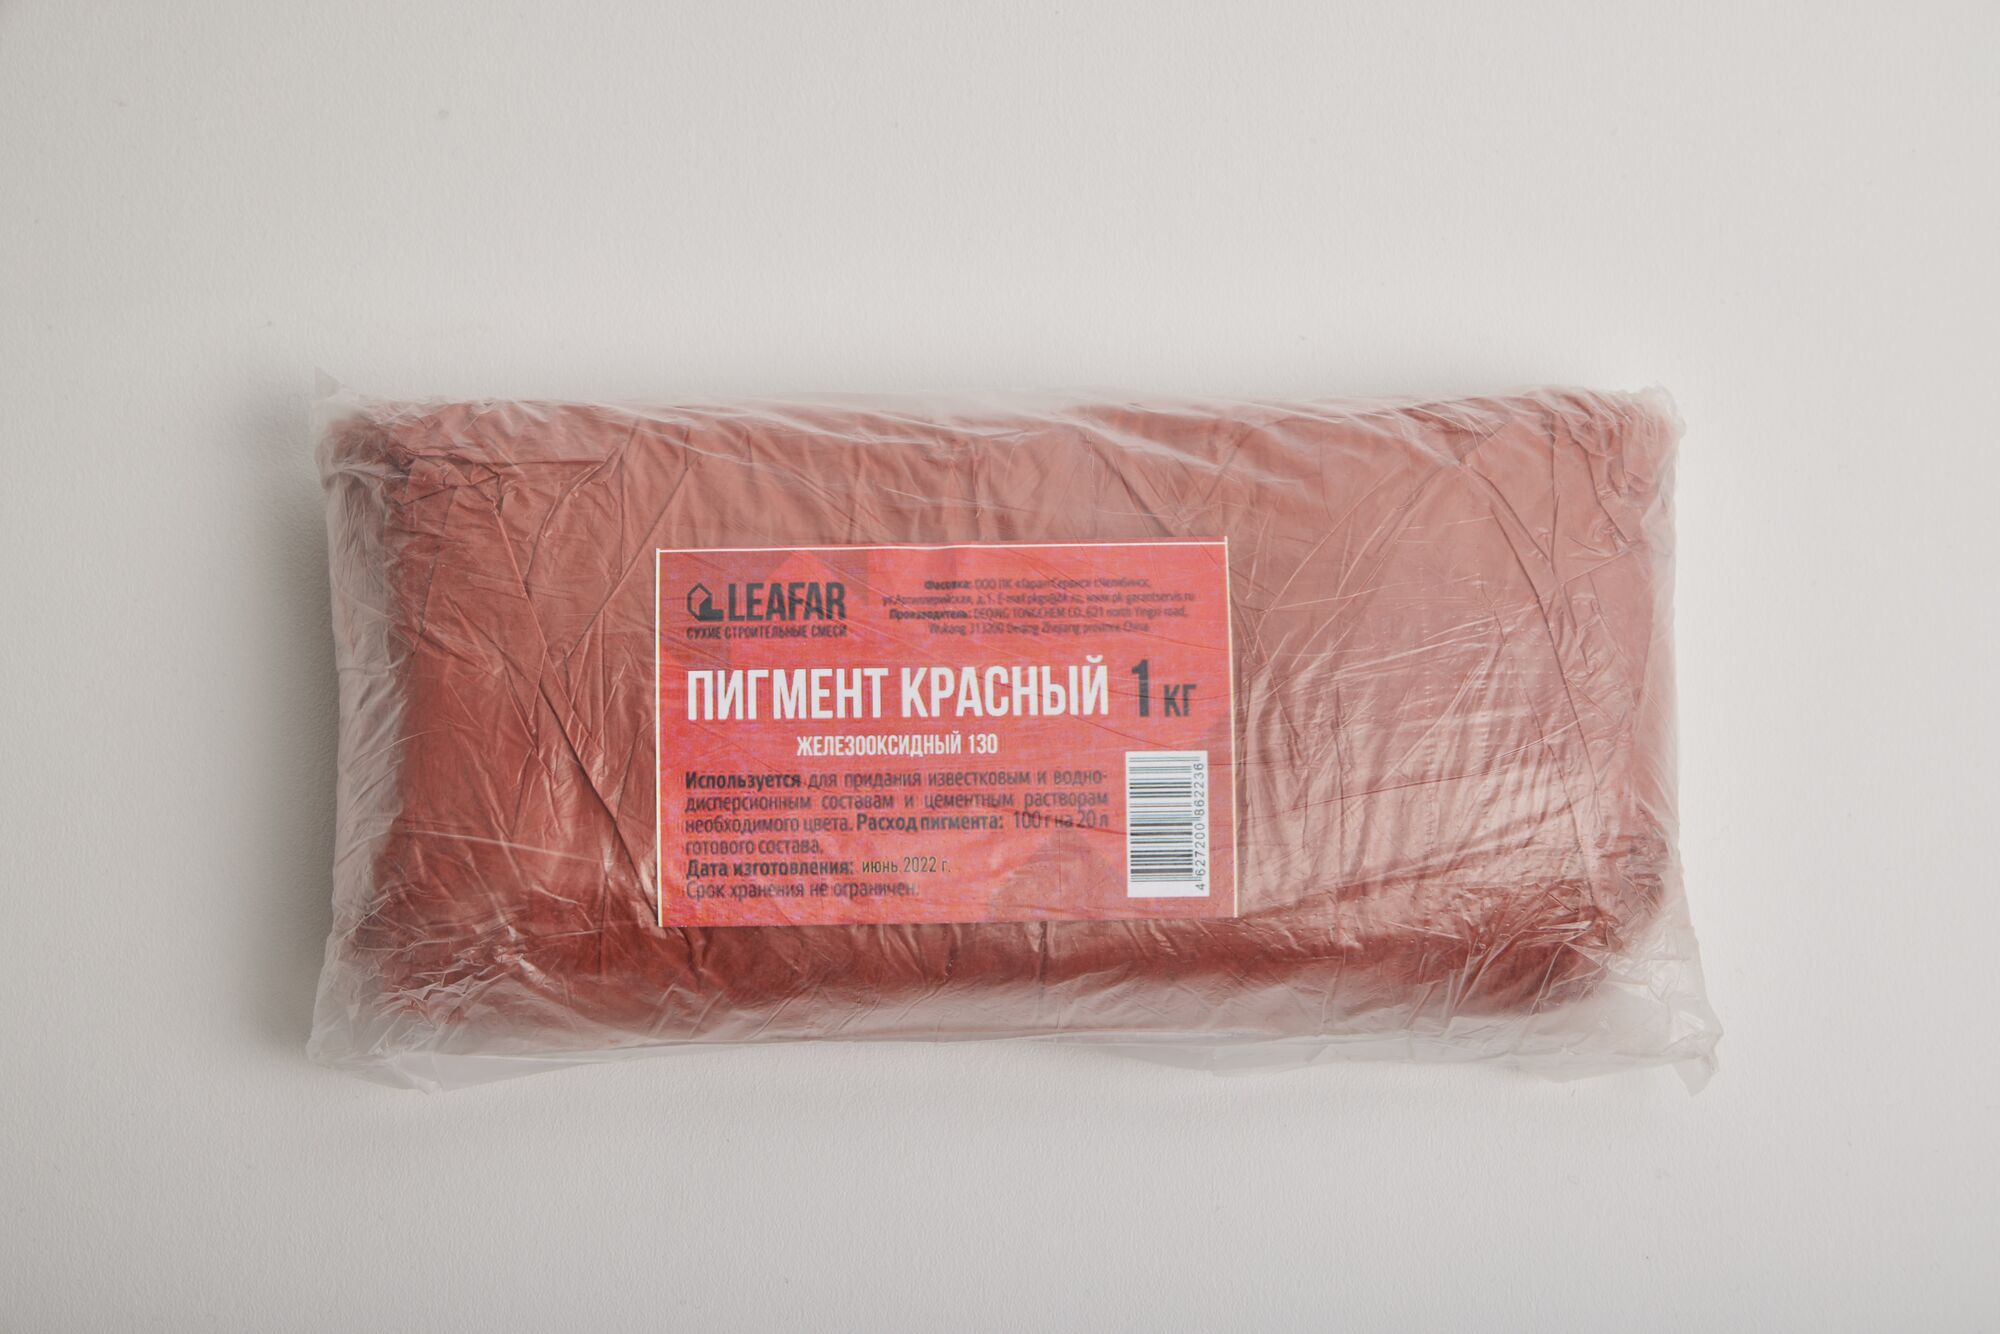 Пигмент красный 130 железооксидный 1 кг